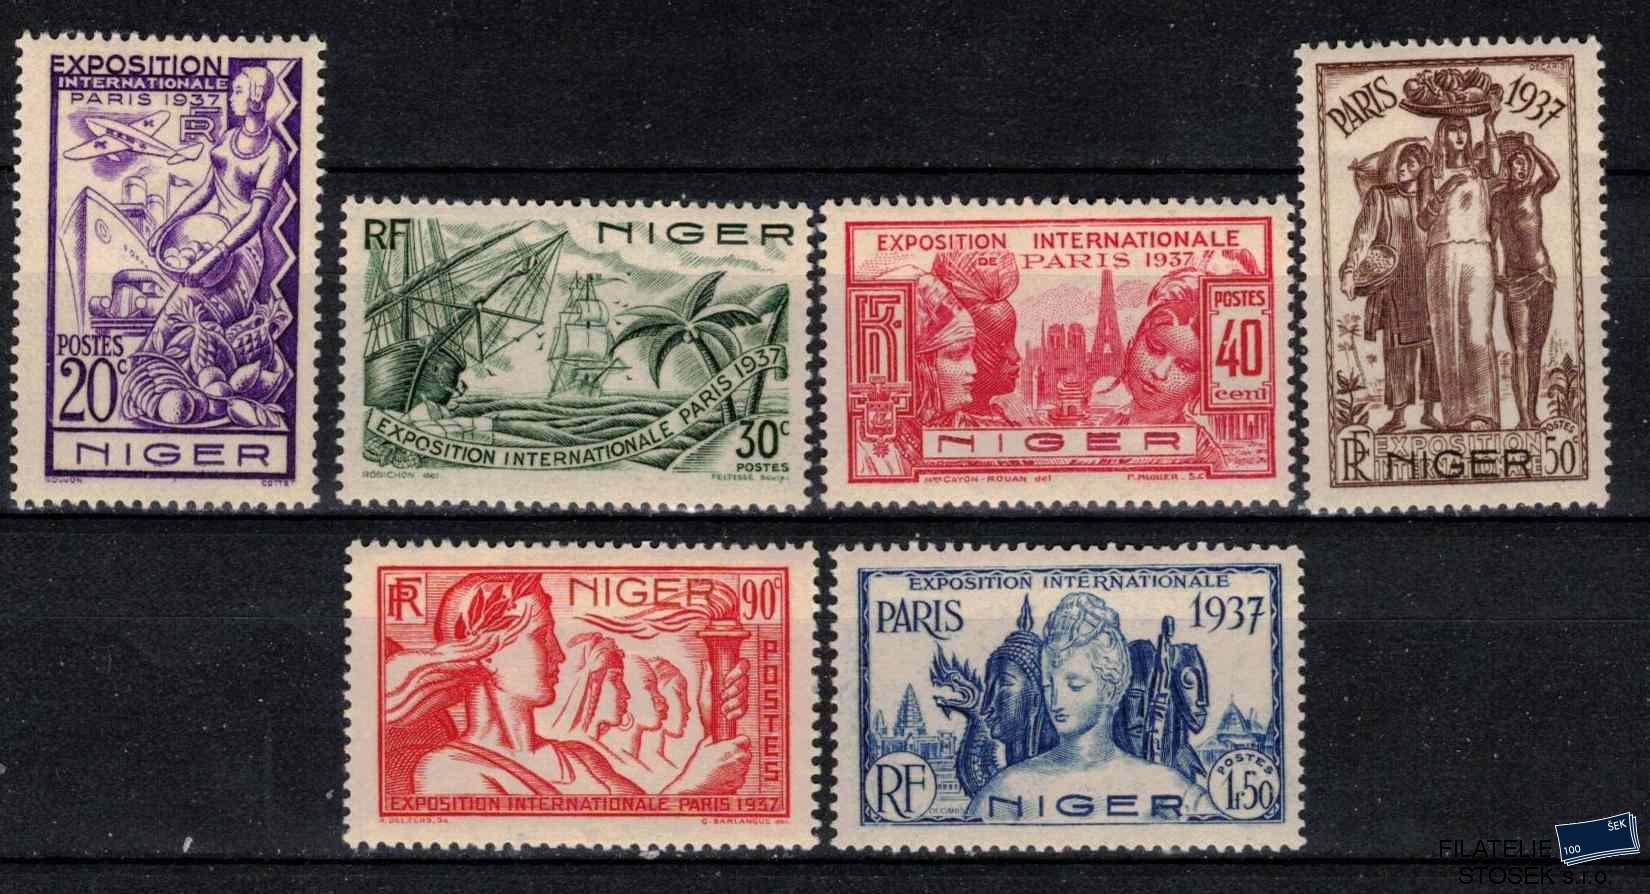 Niger známky 1937 Exposition internationale de Paris